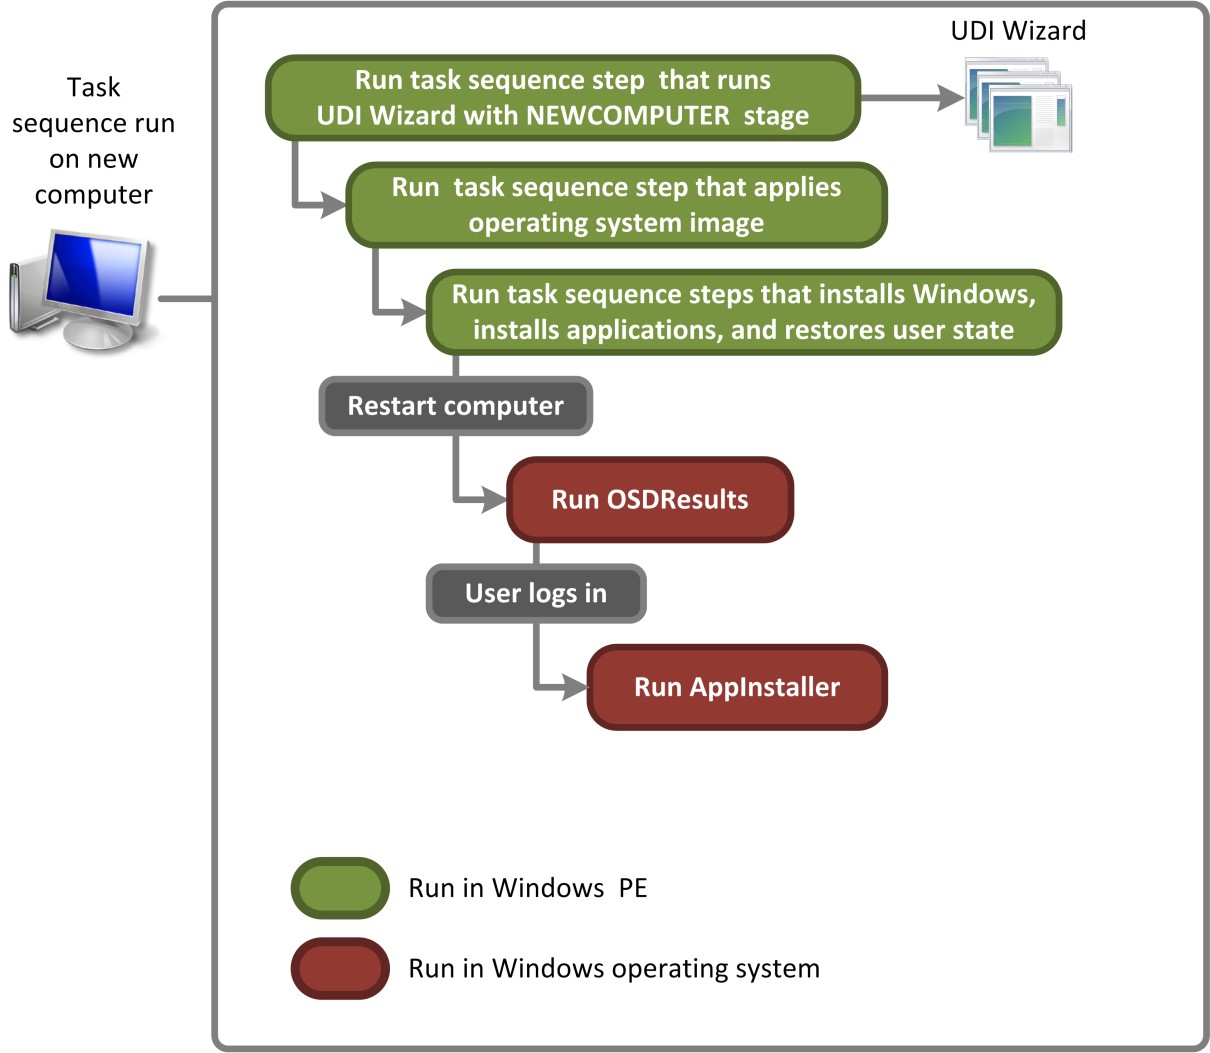 Figura 2. Flujo de proceso para que UDI realice el escenario de implementación nuevo equipo para imágenes almacenadas en puntos de distribución